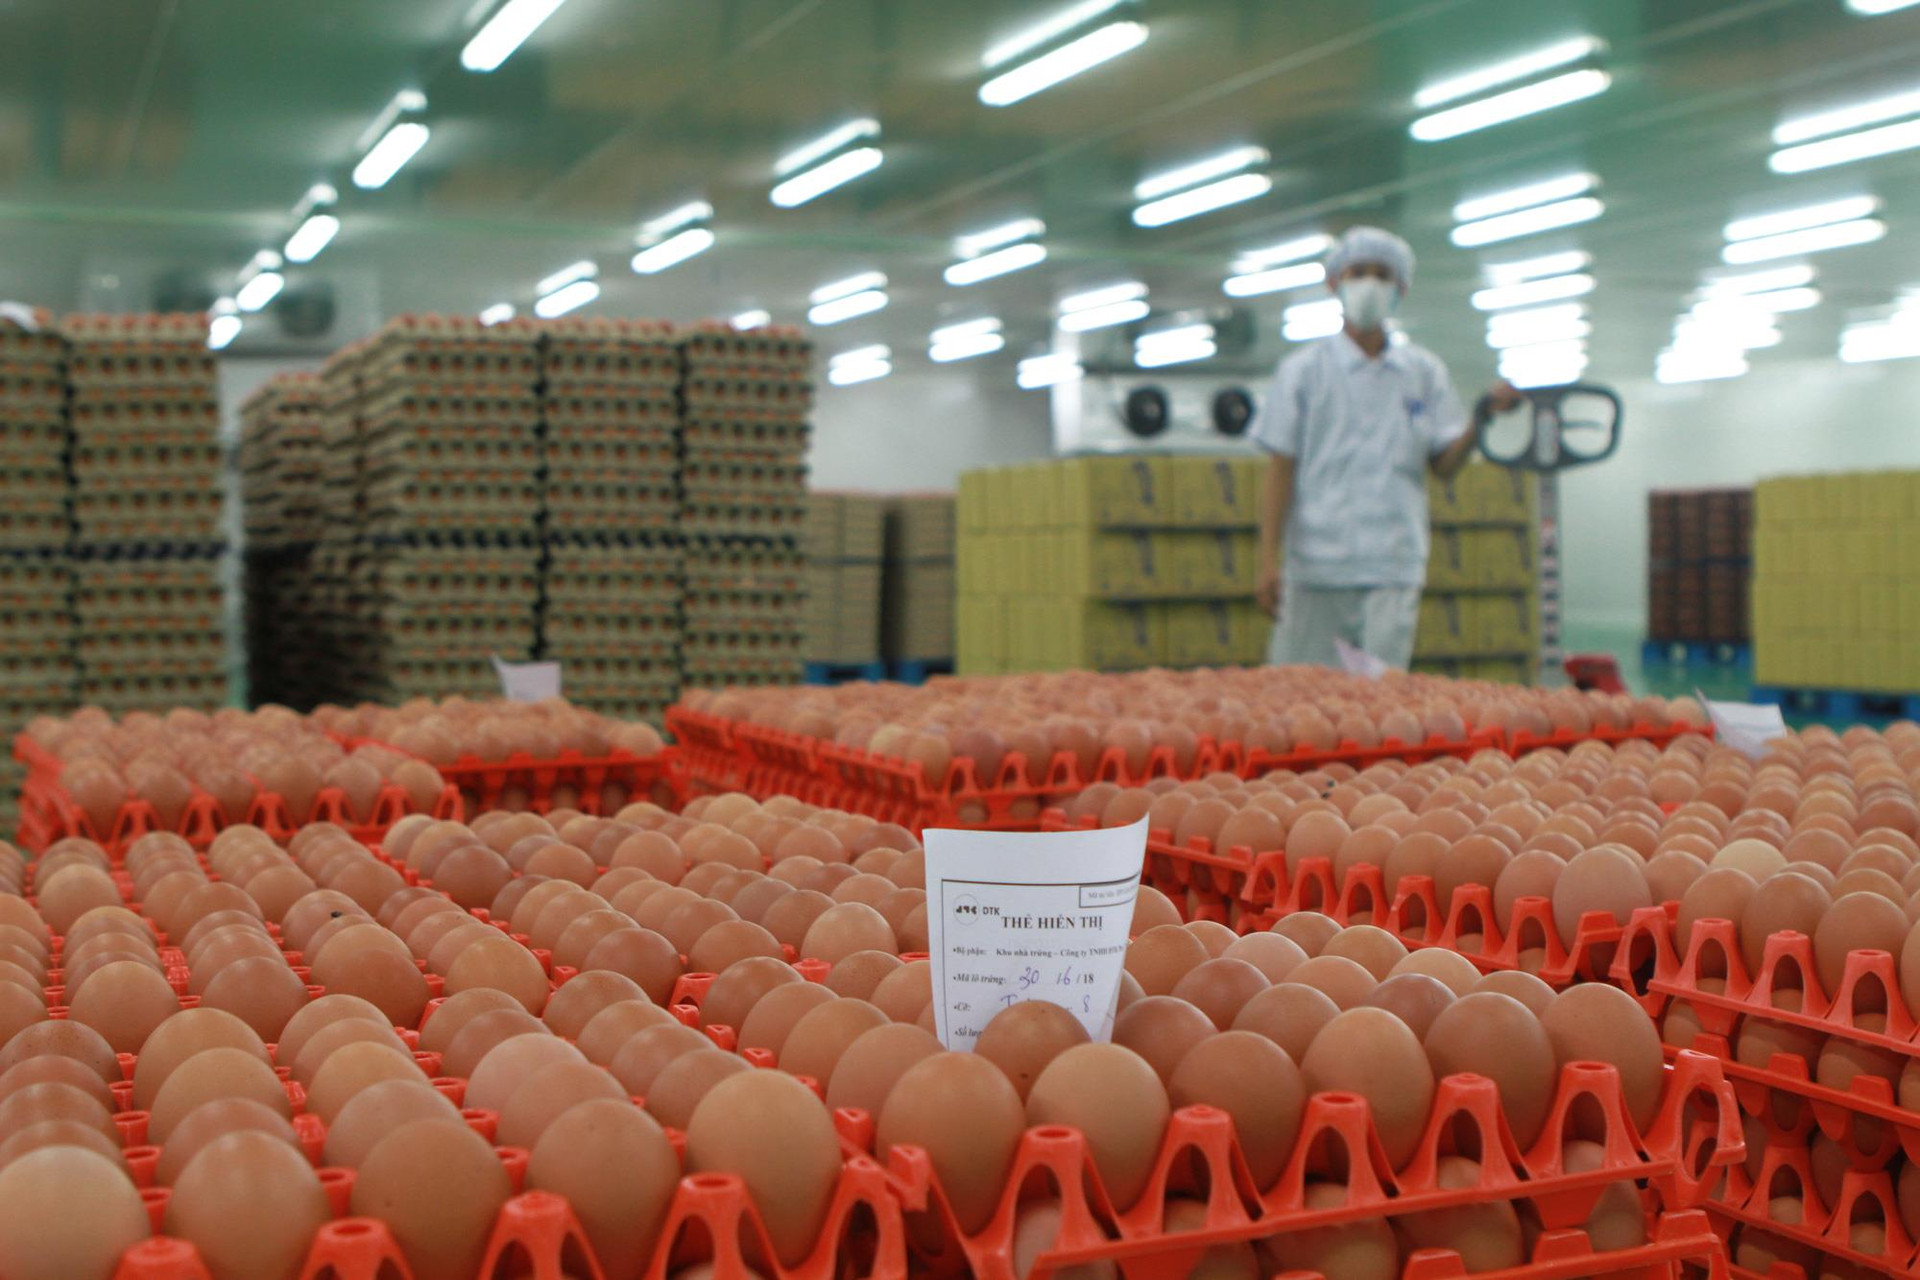 Cùng nuôi gà đẻ trứng: Hòa Phát bán 700.000 trứng/ngày, đại gia nông nghiệp hơn 30 năm kinh nghiệm bị Vietcombank, Vietinbank lần lượt rao bán nợ cả nghìn tỷ đồng - Ảnh 2.